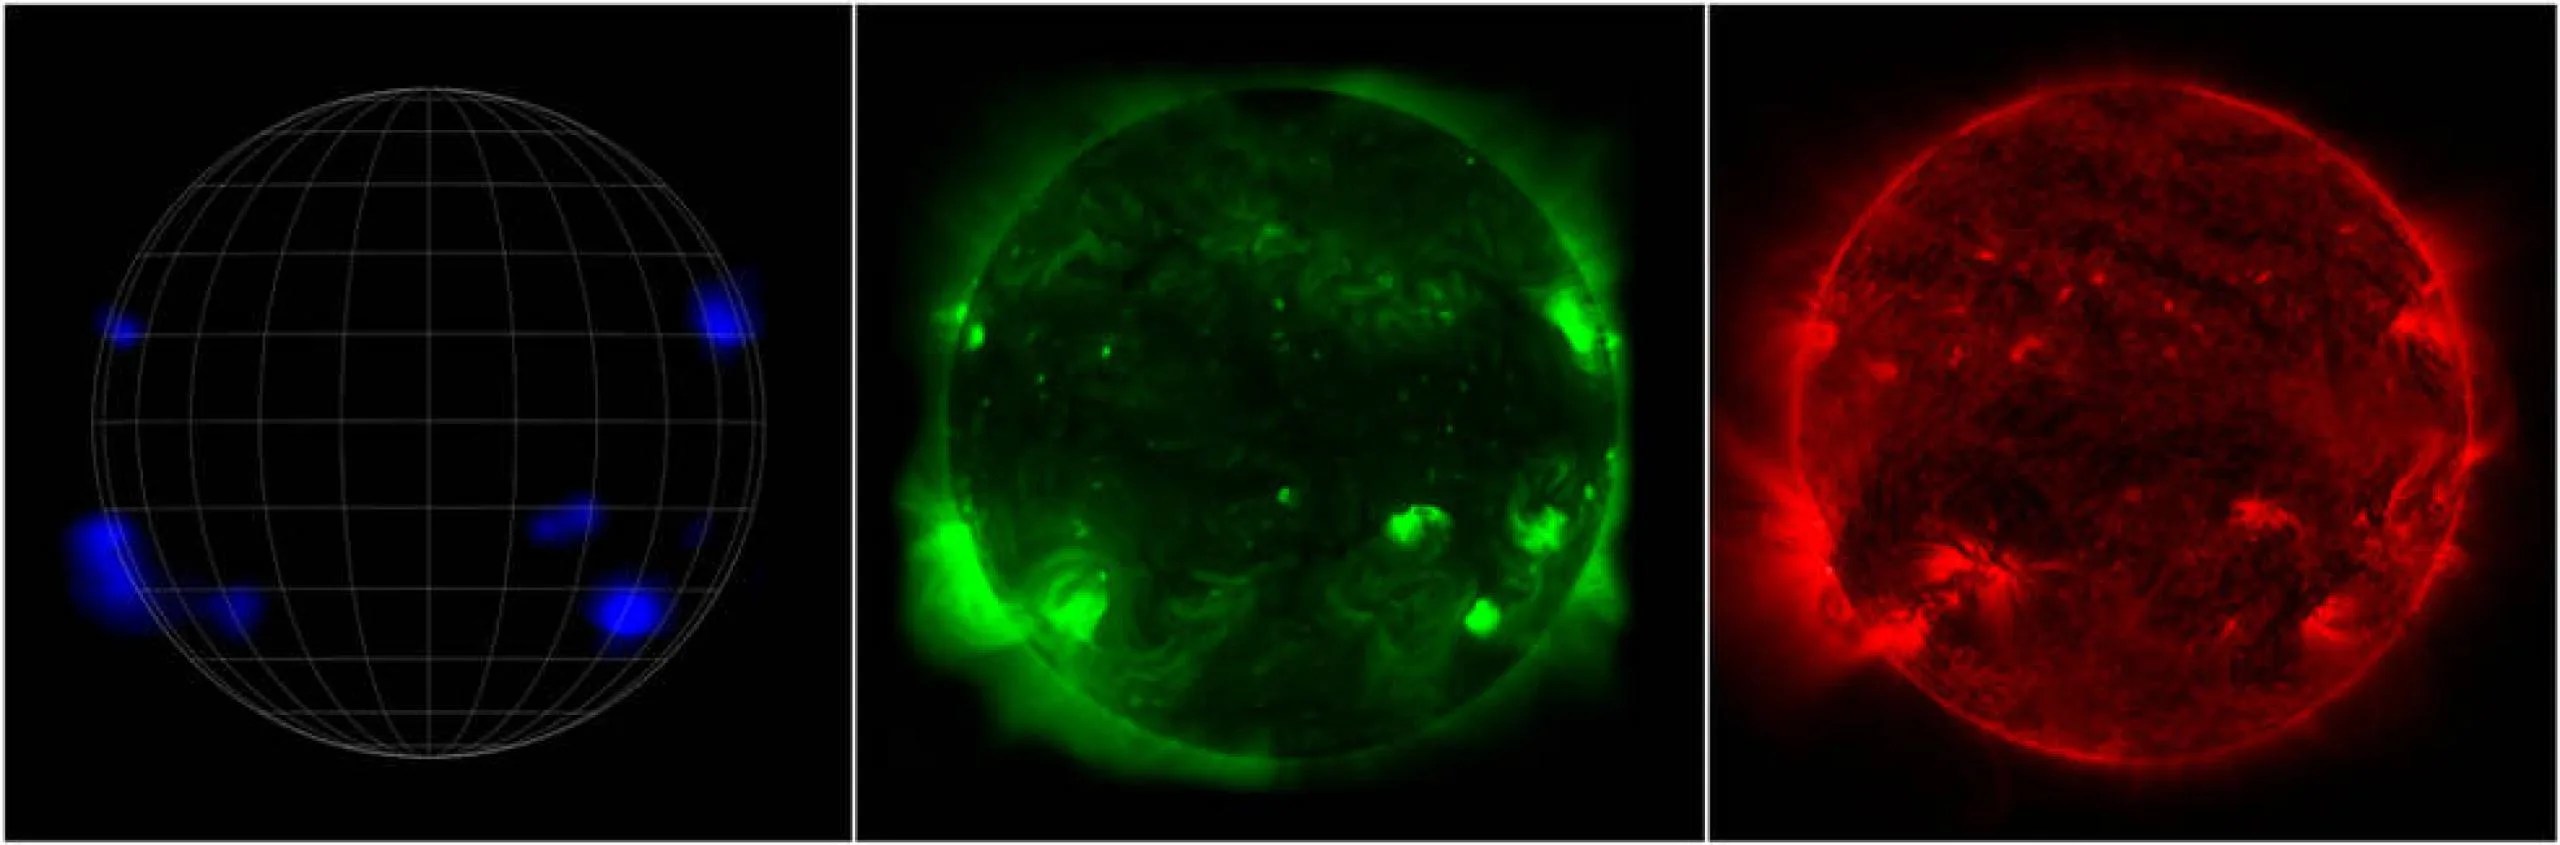 Una imagen dividida en tres, que muestra diferentes aspectos del Sol sobre un fondo negro. De izquierda a derecha: el observatorio NuSTAR de la NASA ve rayos X de alta energía (azul), la misión Hinode de JAXA ve rayos X de menor energía (verde) y el Observatorio de Dinámica Solar de la NASA ve luz ultravioleta (rojo).